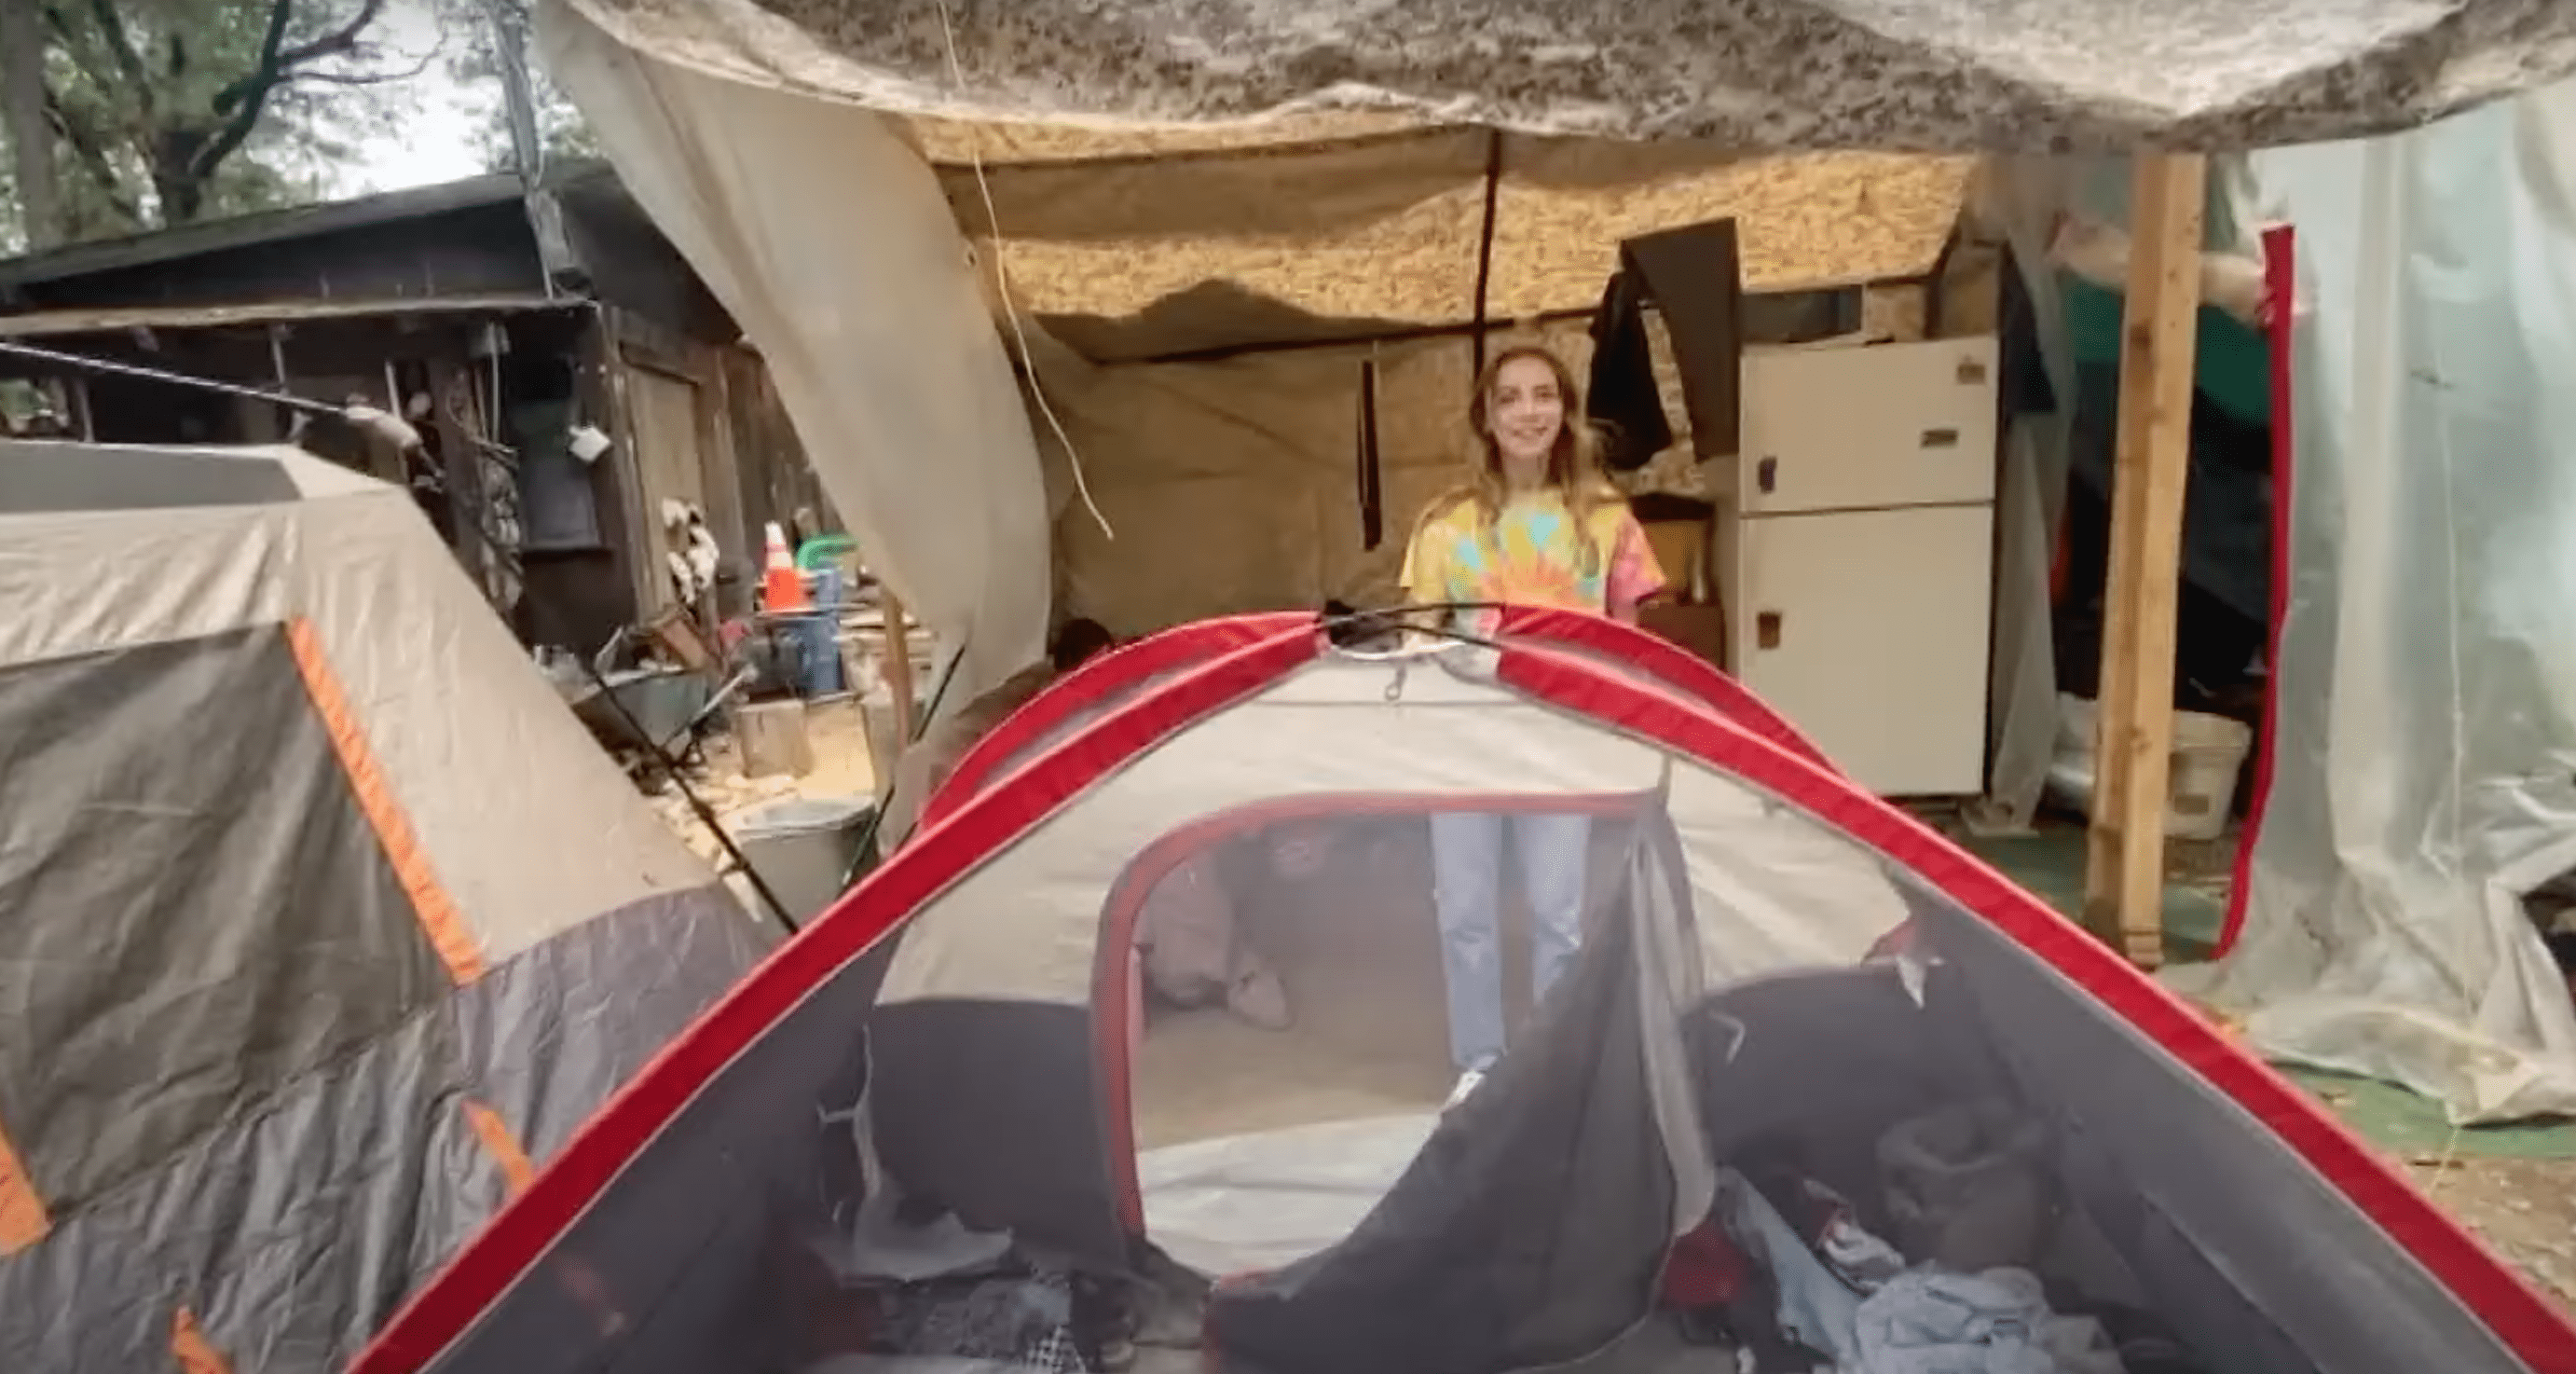 La famille Hatch a vécu dans des tentes après qu'un incendie ait détruit leur maison. | Source : youtube.com/ABC10